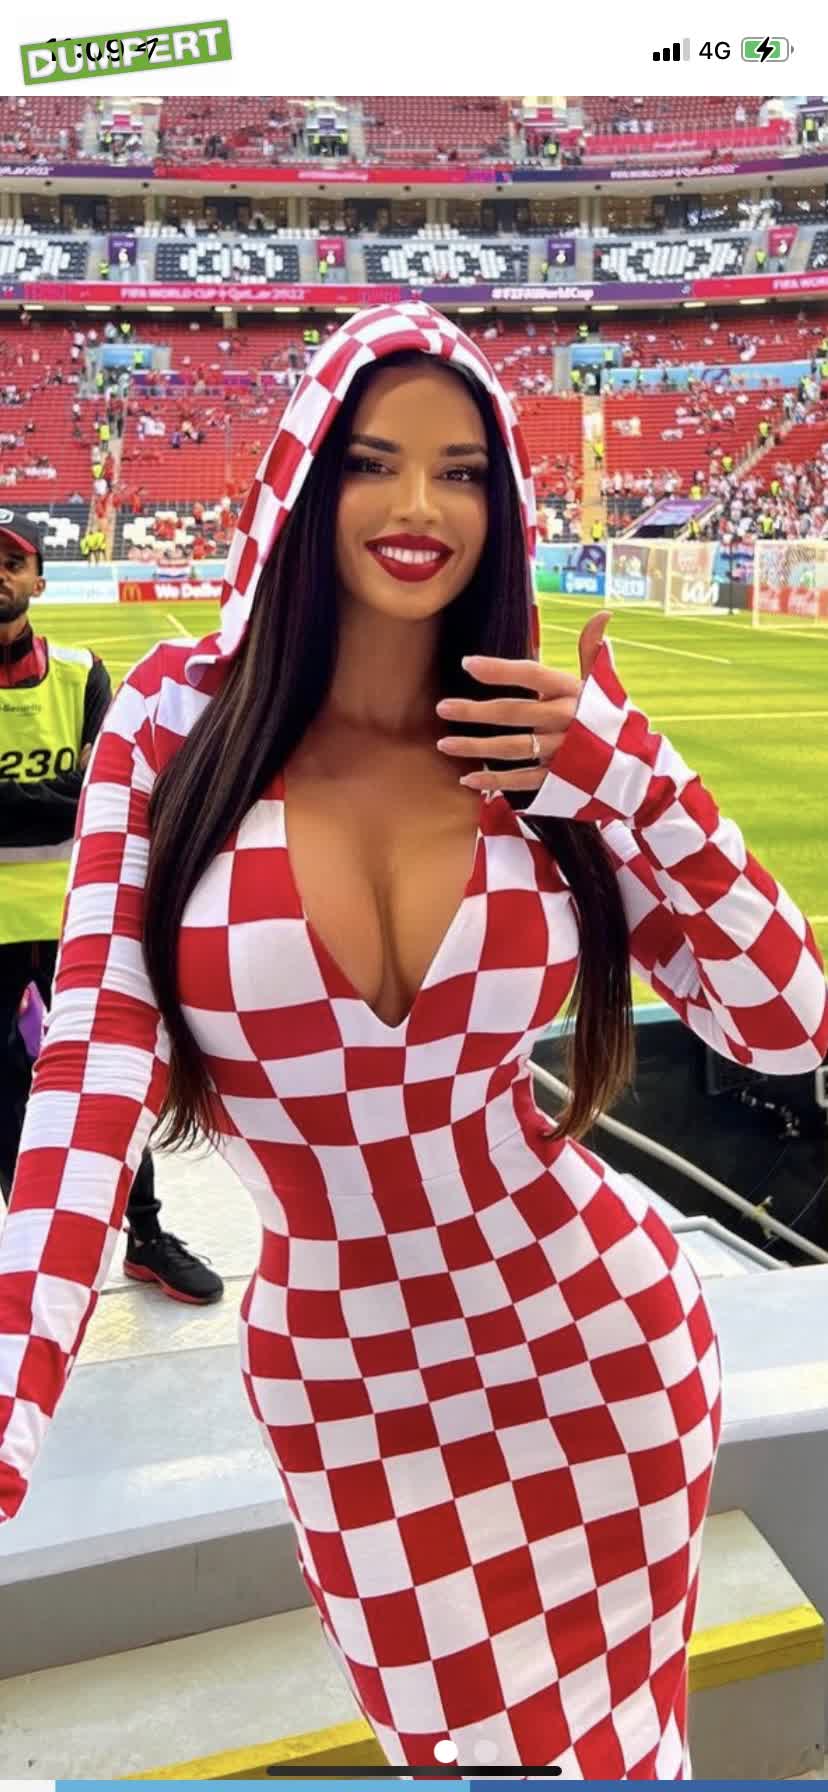 Speelt Kroatië vandaag?